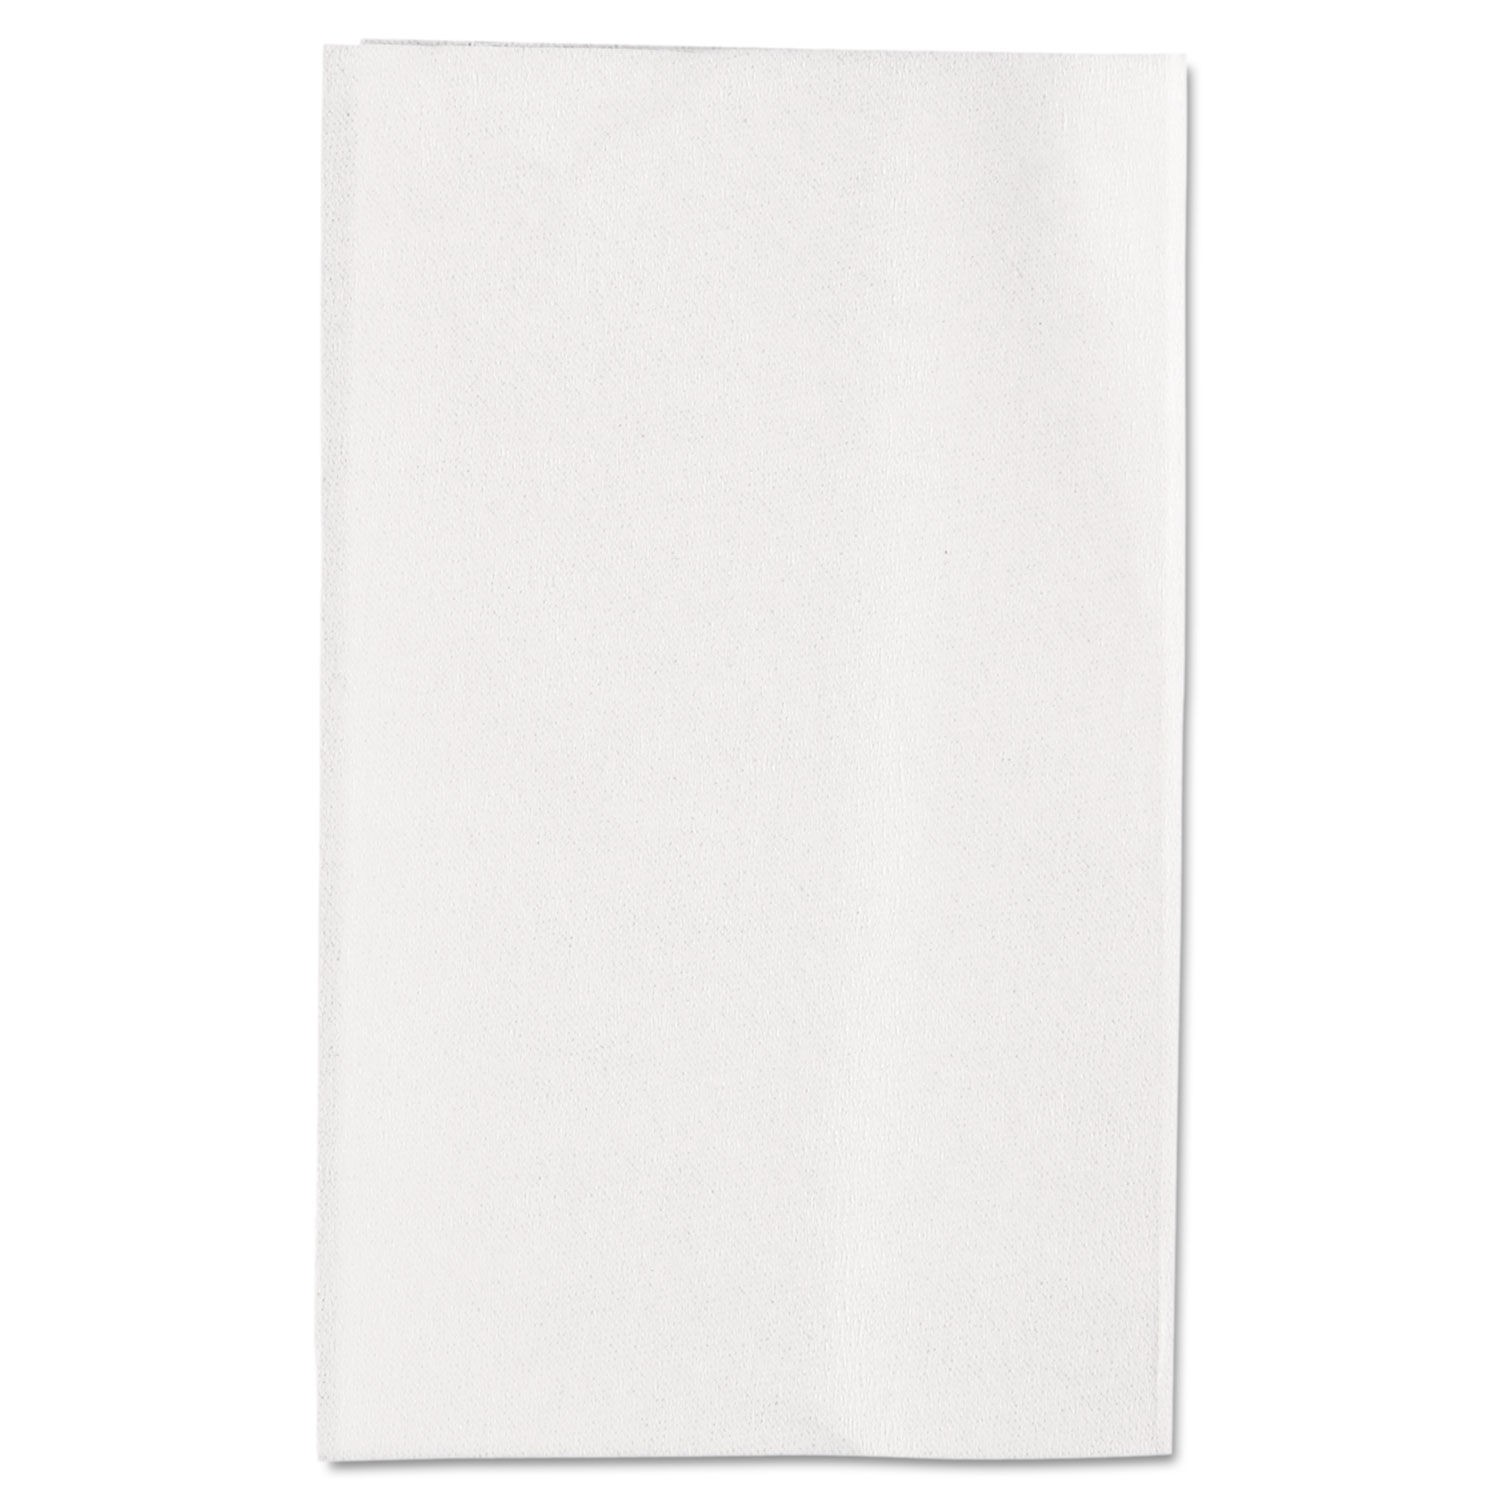 Singlefold Interfolded 1-Ply Bathroom Tissue, White, 400 Sheets/Pack, 60 Packs/Carton